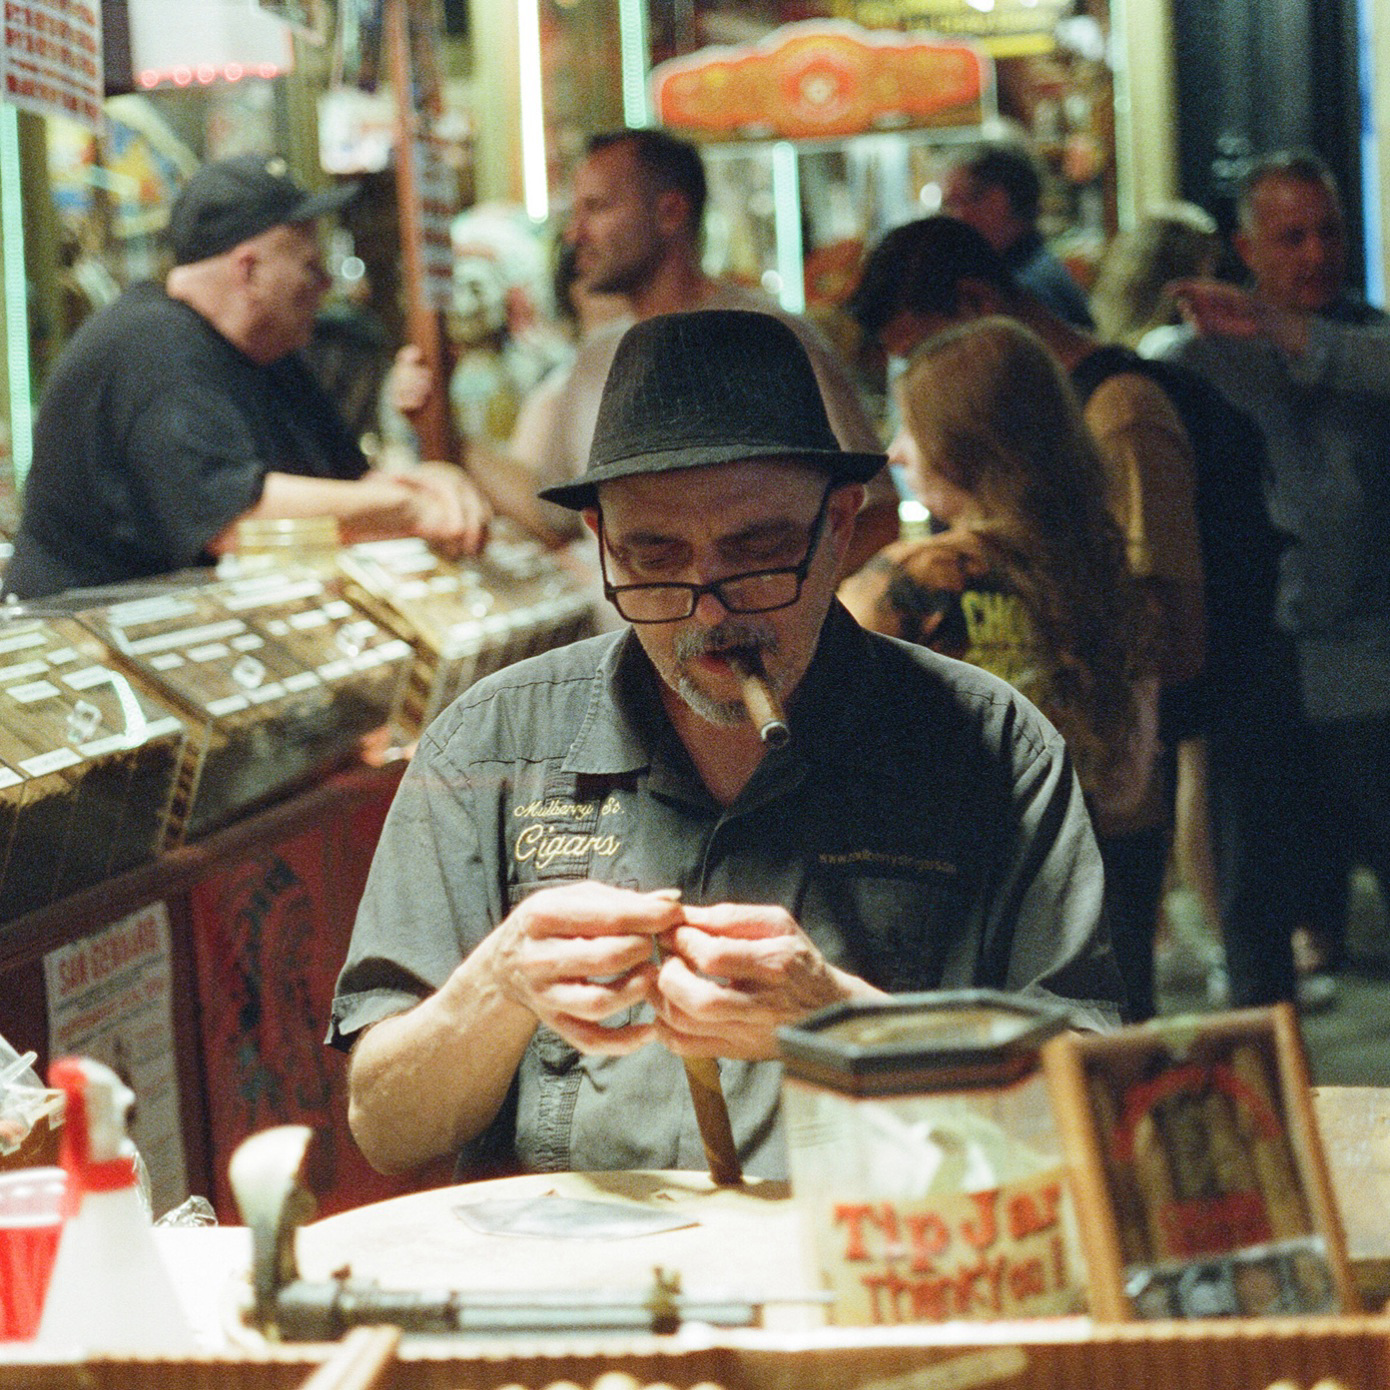 A man smoking a cigar Dimes Sqaure.